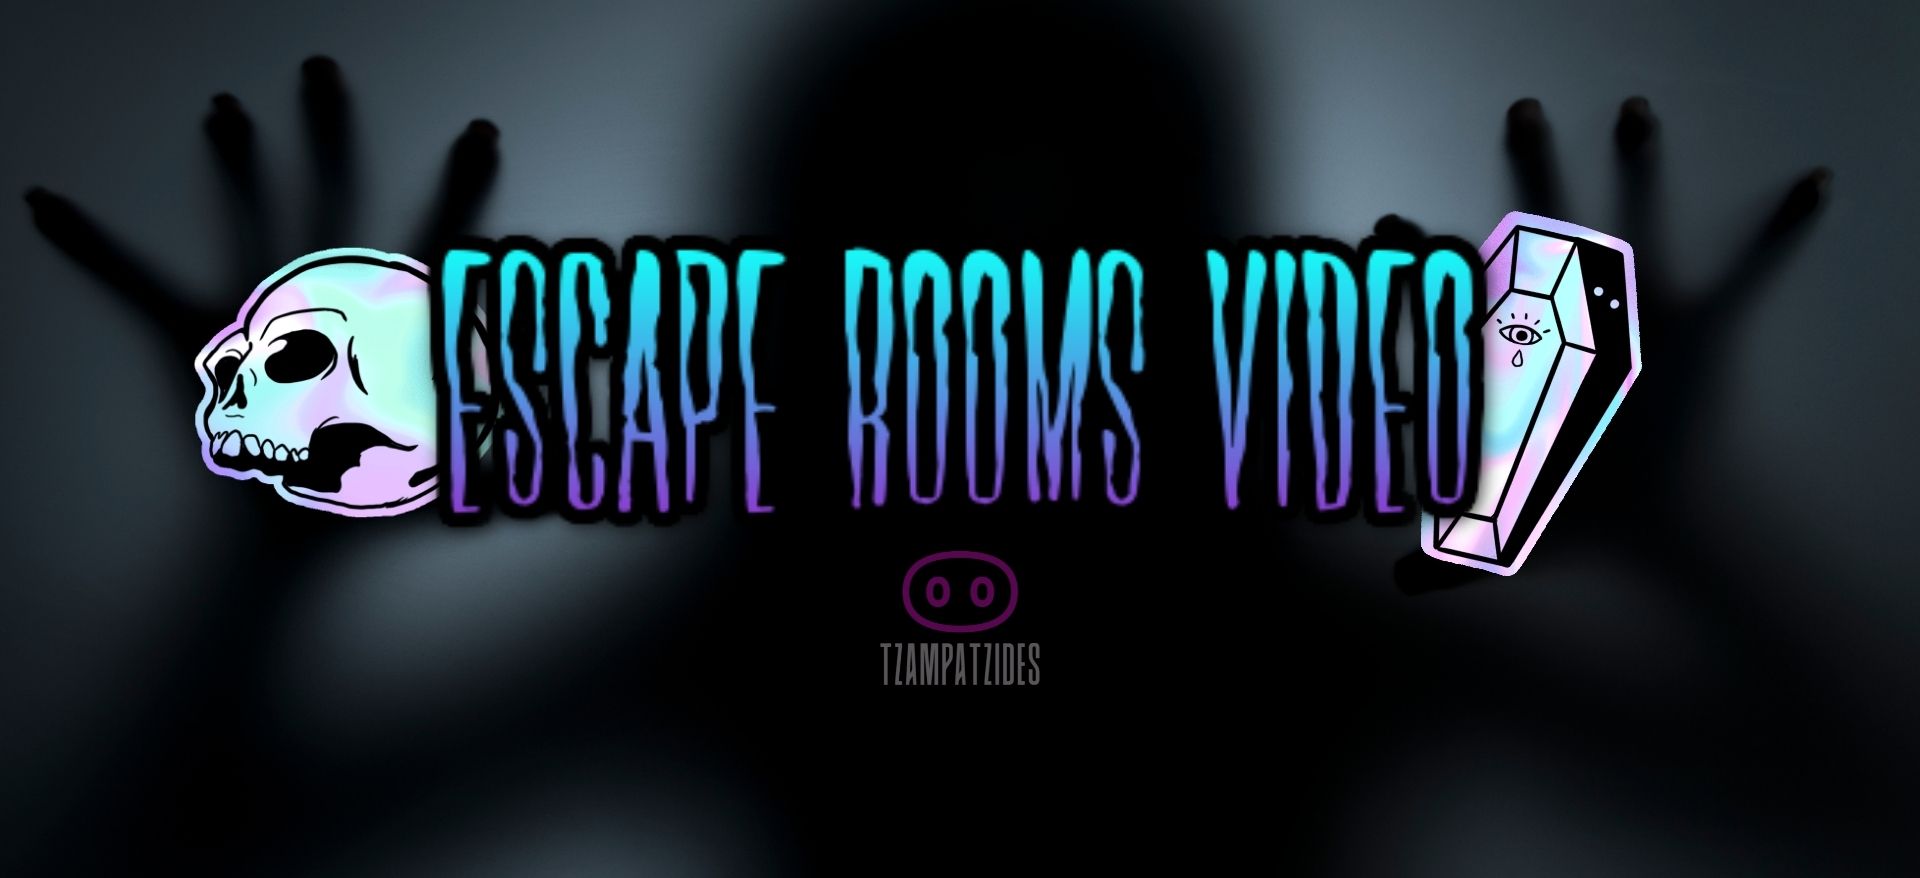 Escape Rooms Videos